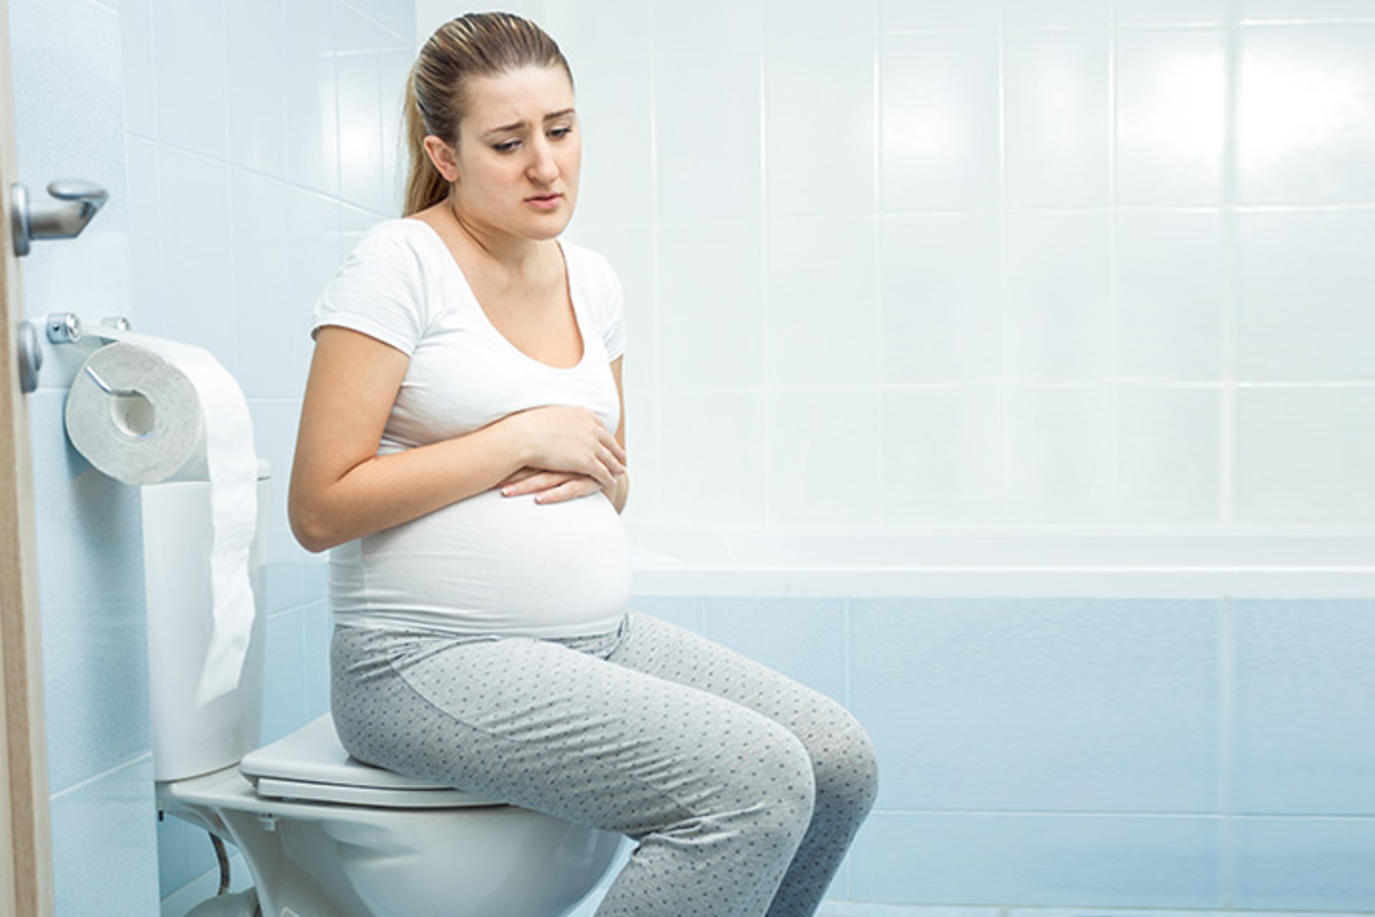 كيفية علاج امساك الحمل وافضل الطرق لتجنب الامساك للحوامل بالطرق الطبيعية